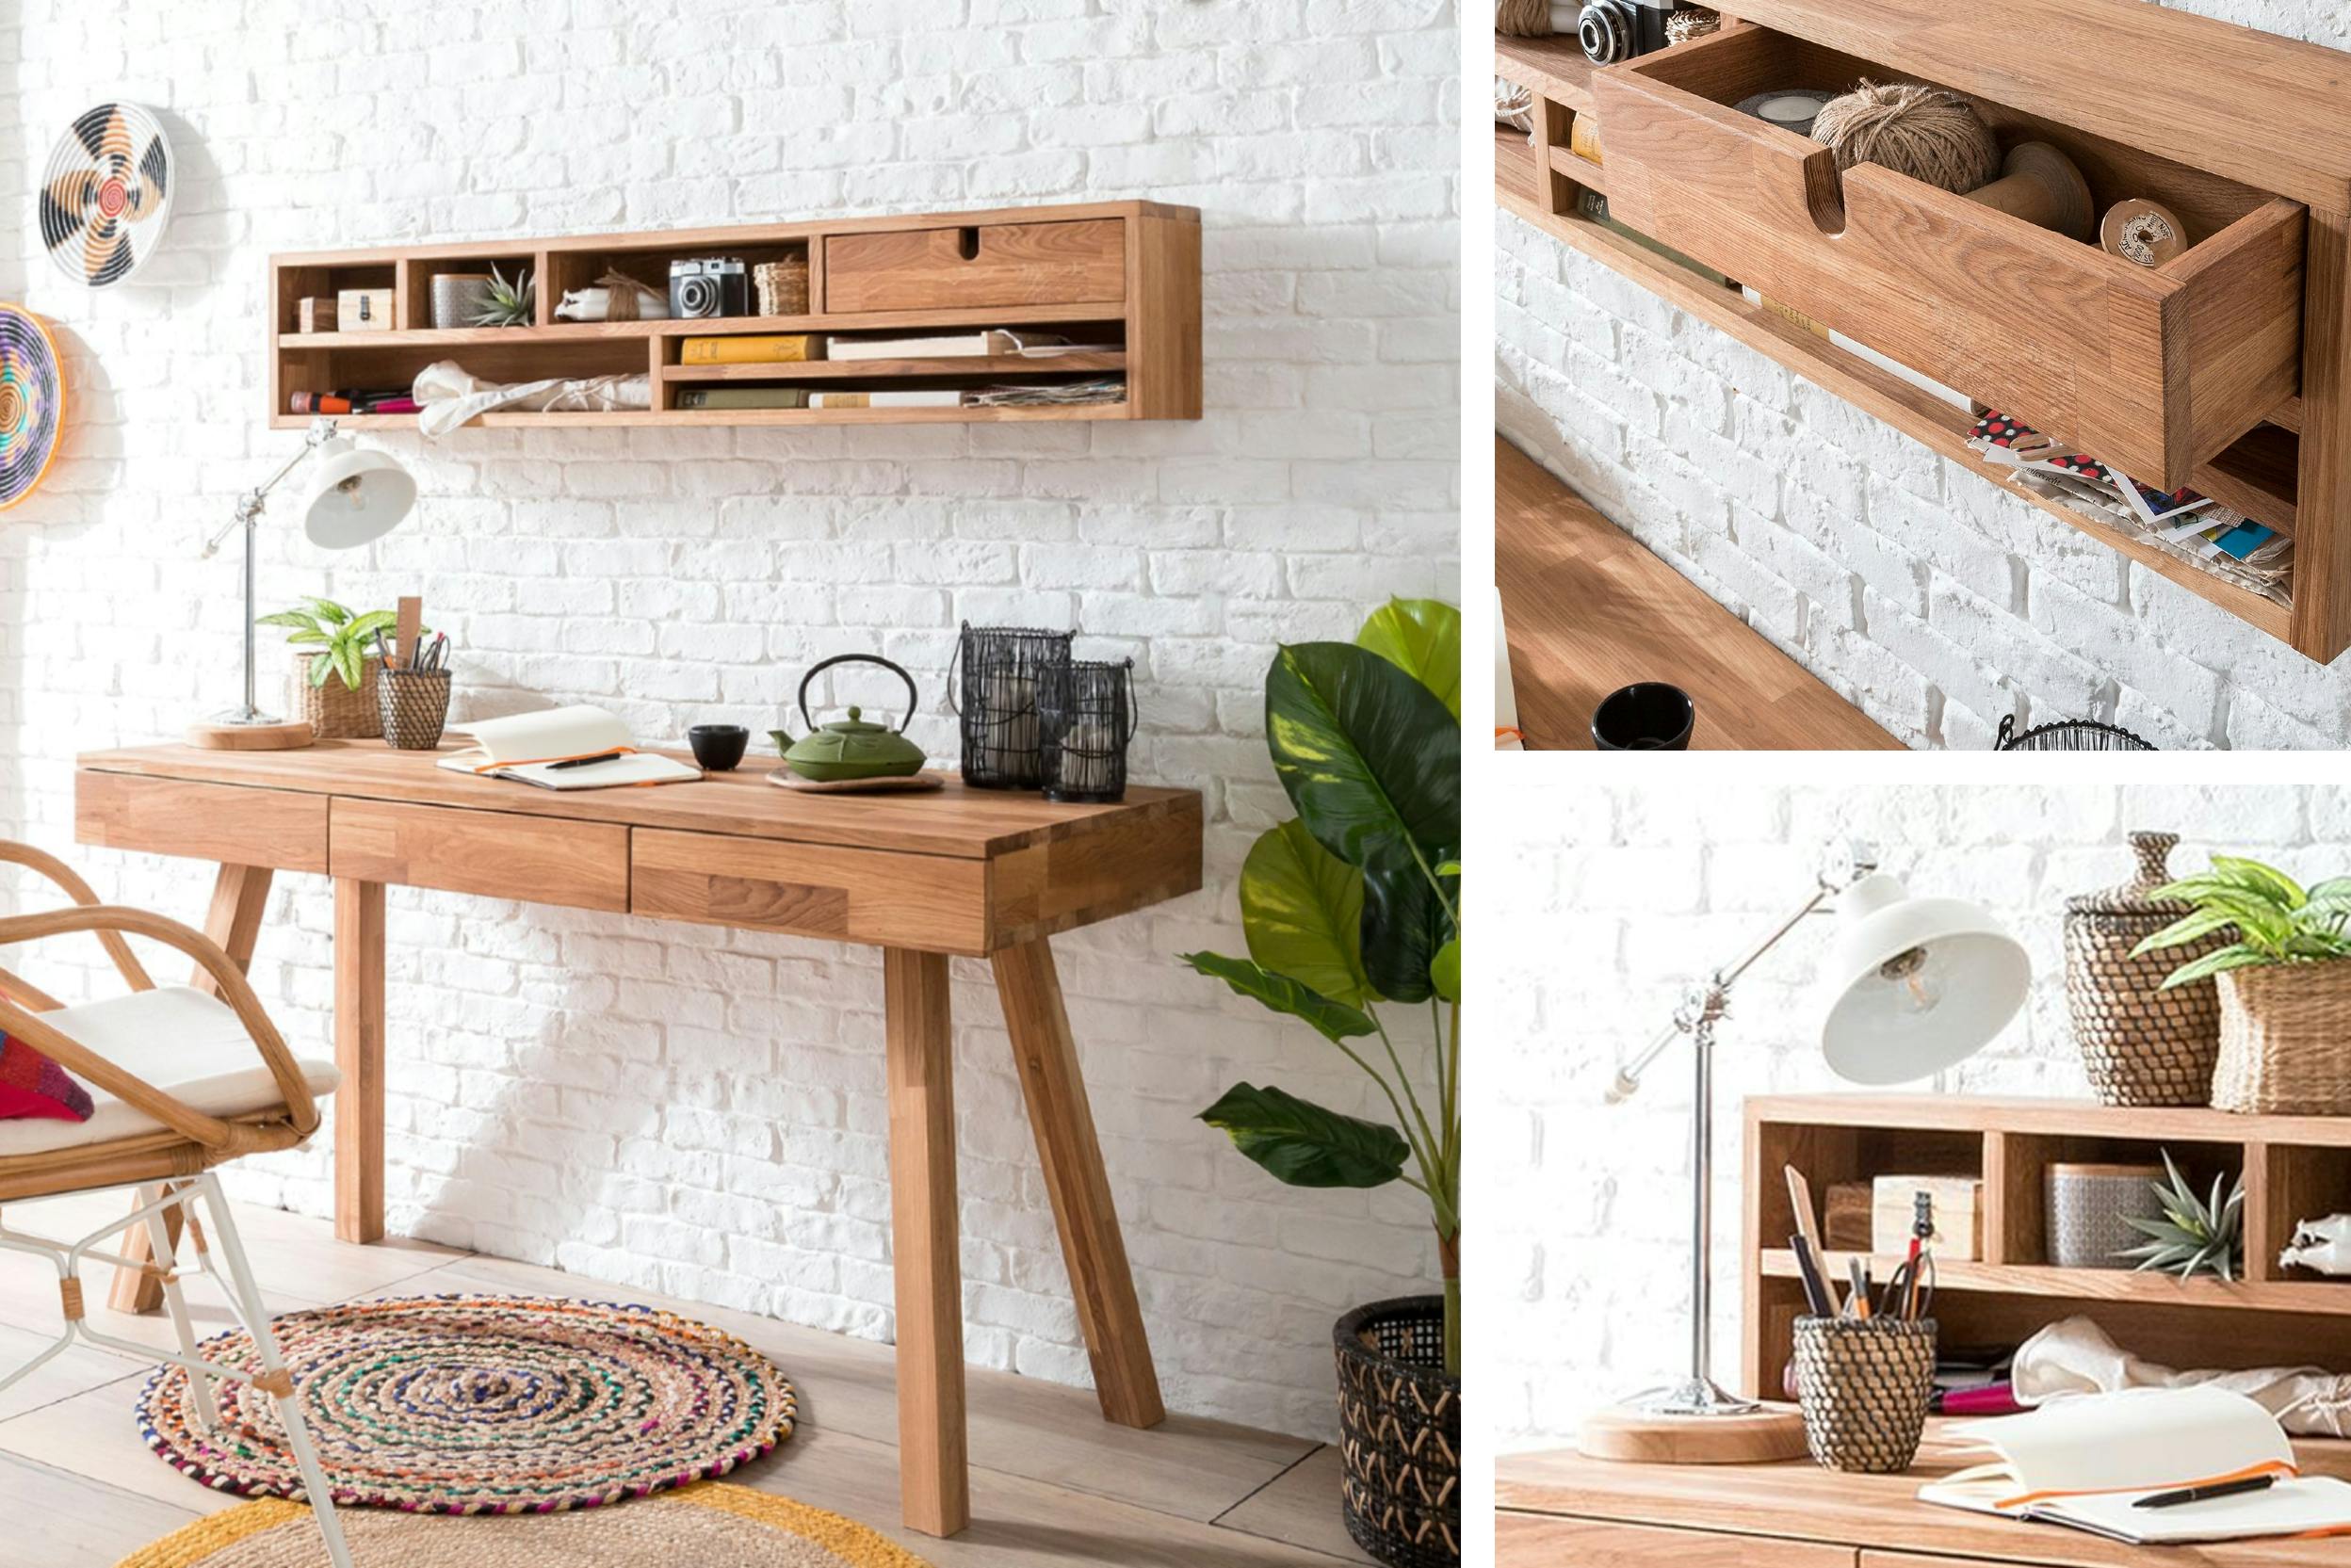 Handig houten bureau met opbergruimte erboven en laden voor een opgeruimde werkplek.